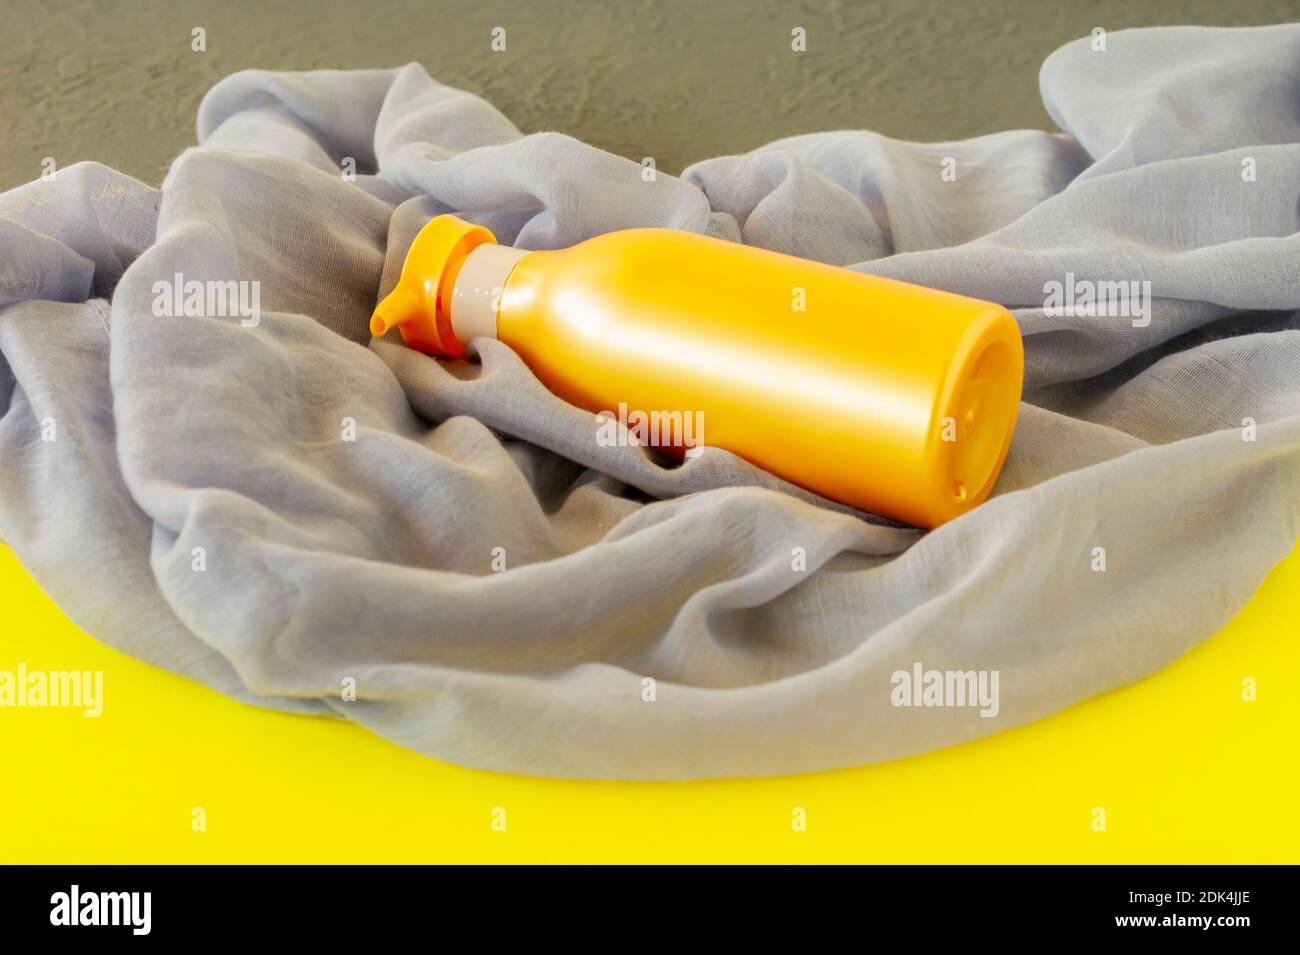 Tratamiento de spa y concepto de cuidado corporal en colores de la Año 2021 - amarillo iluminante y último gris Foto de stock